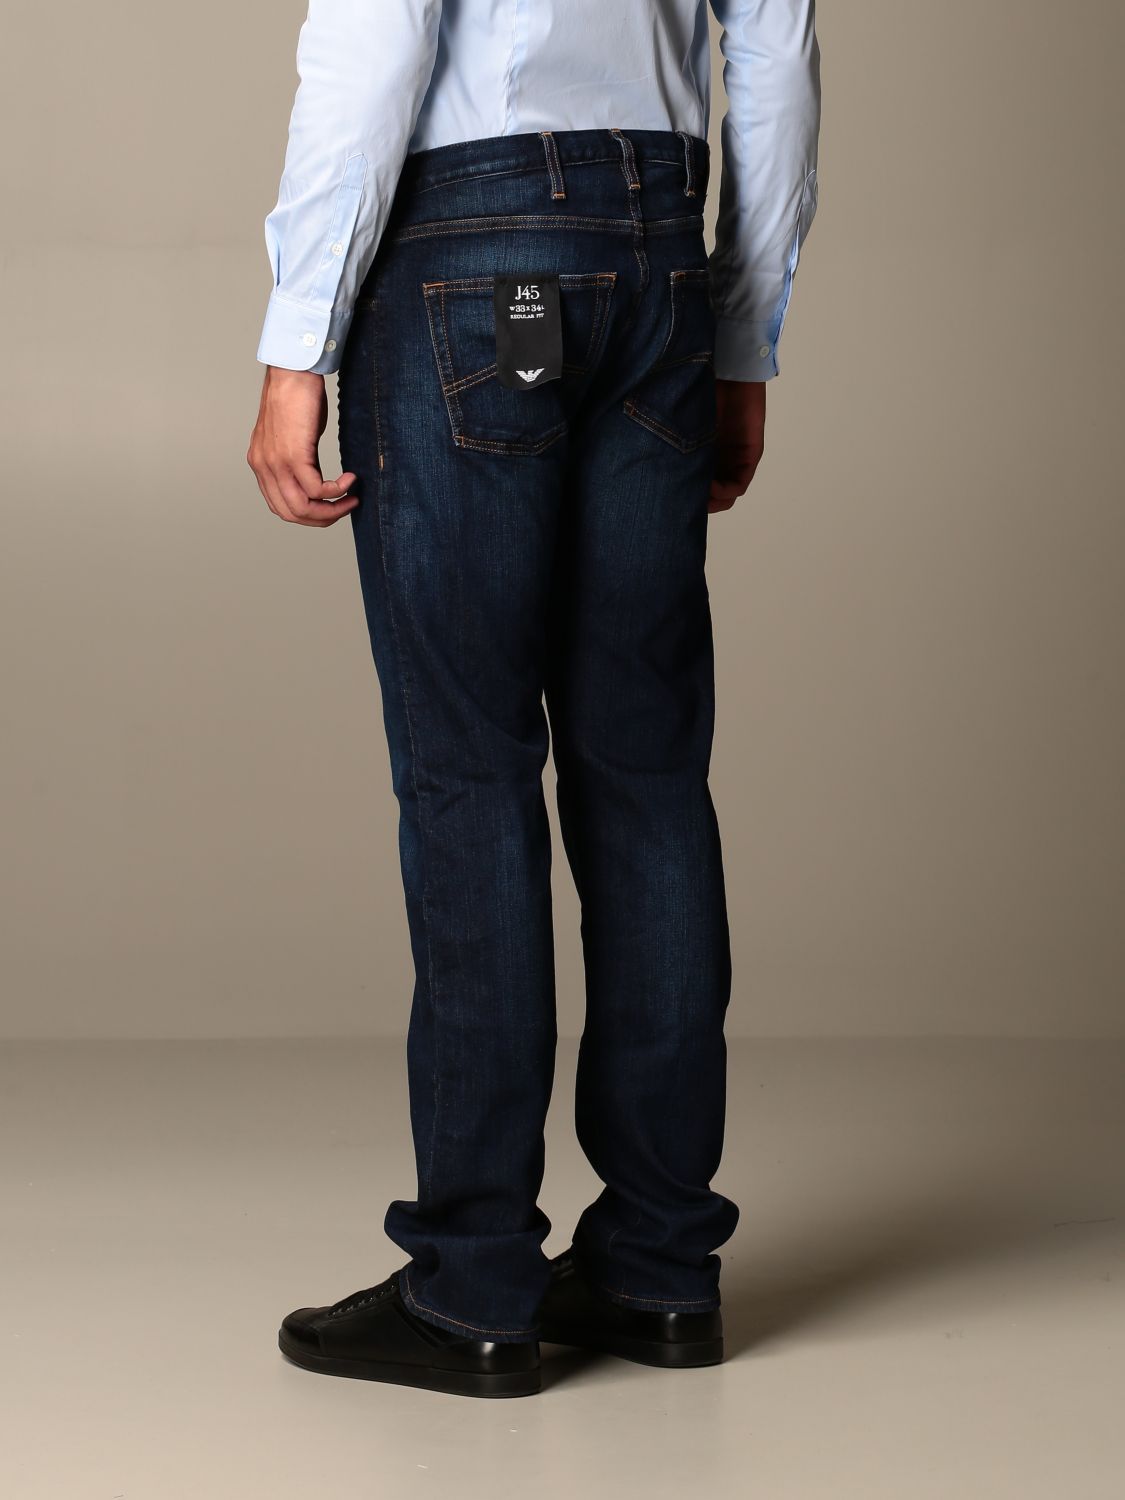 Outlet Emporio Armani: Jeans para hombre, | Jeans Emporio Armani 8N1J45 en en GIGLIO.COM